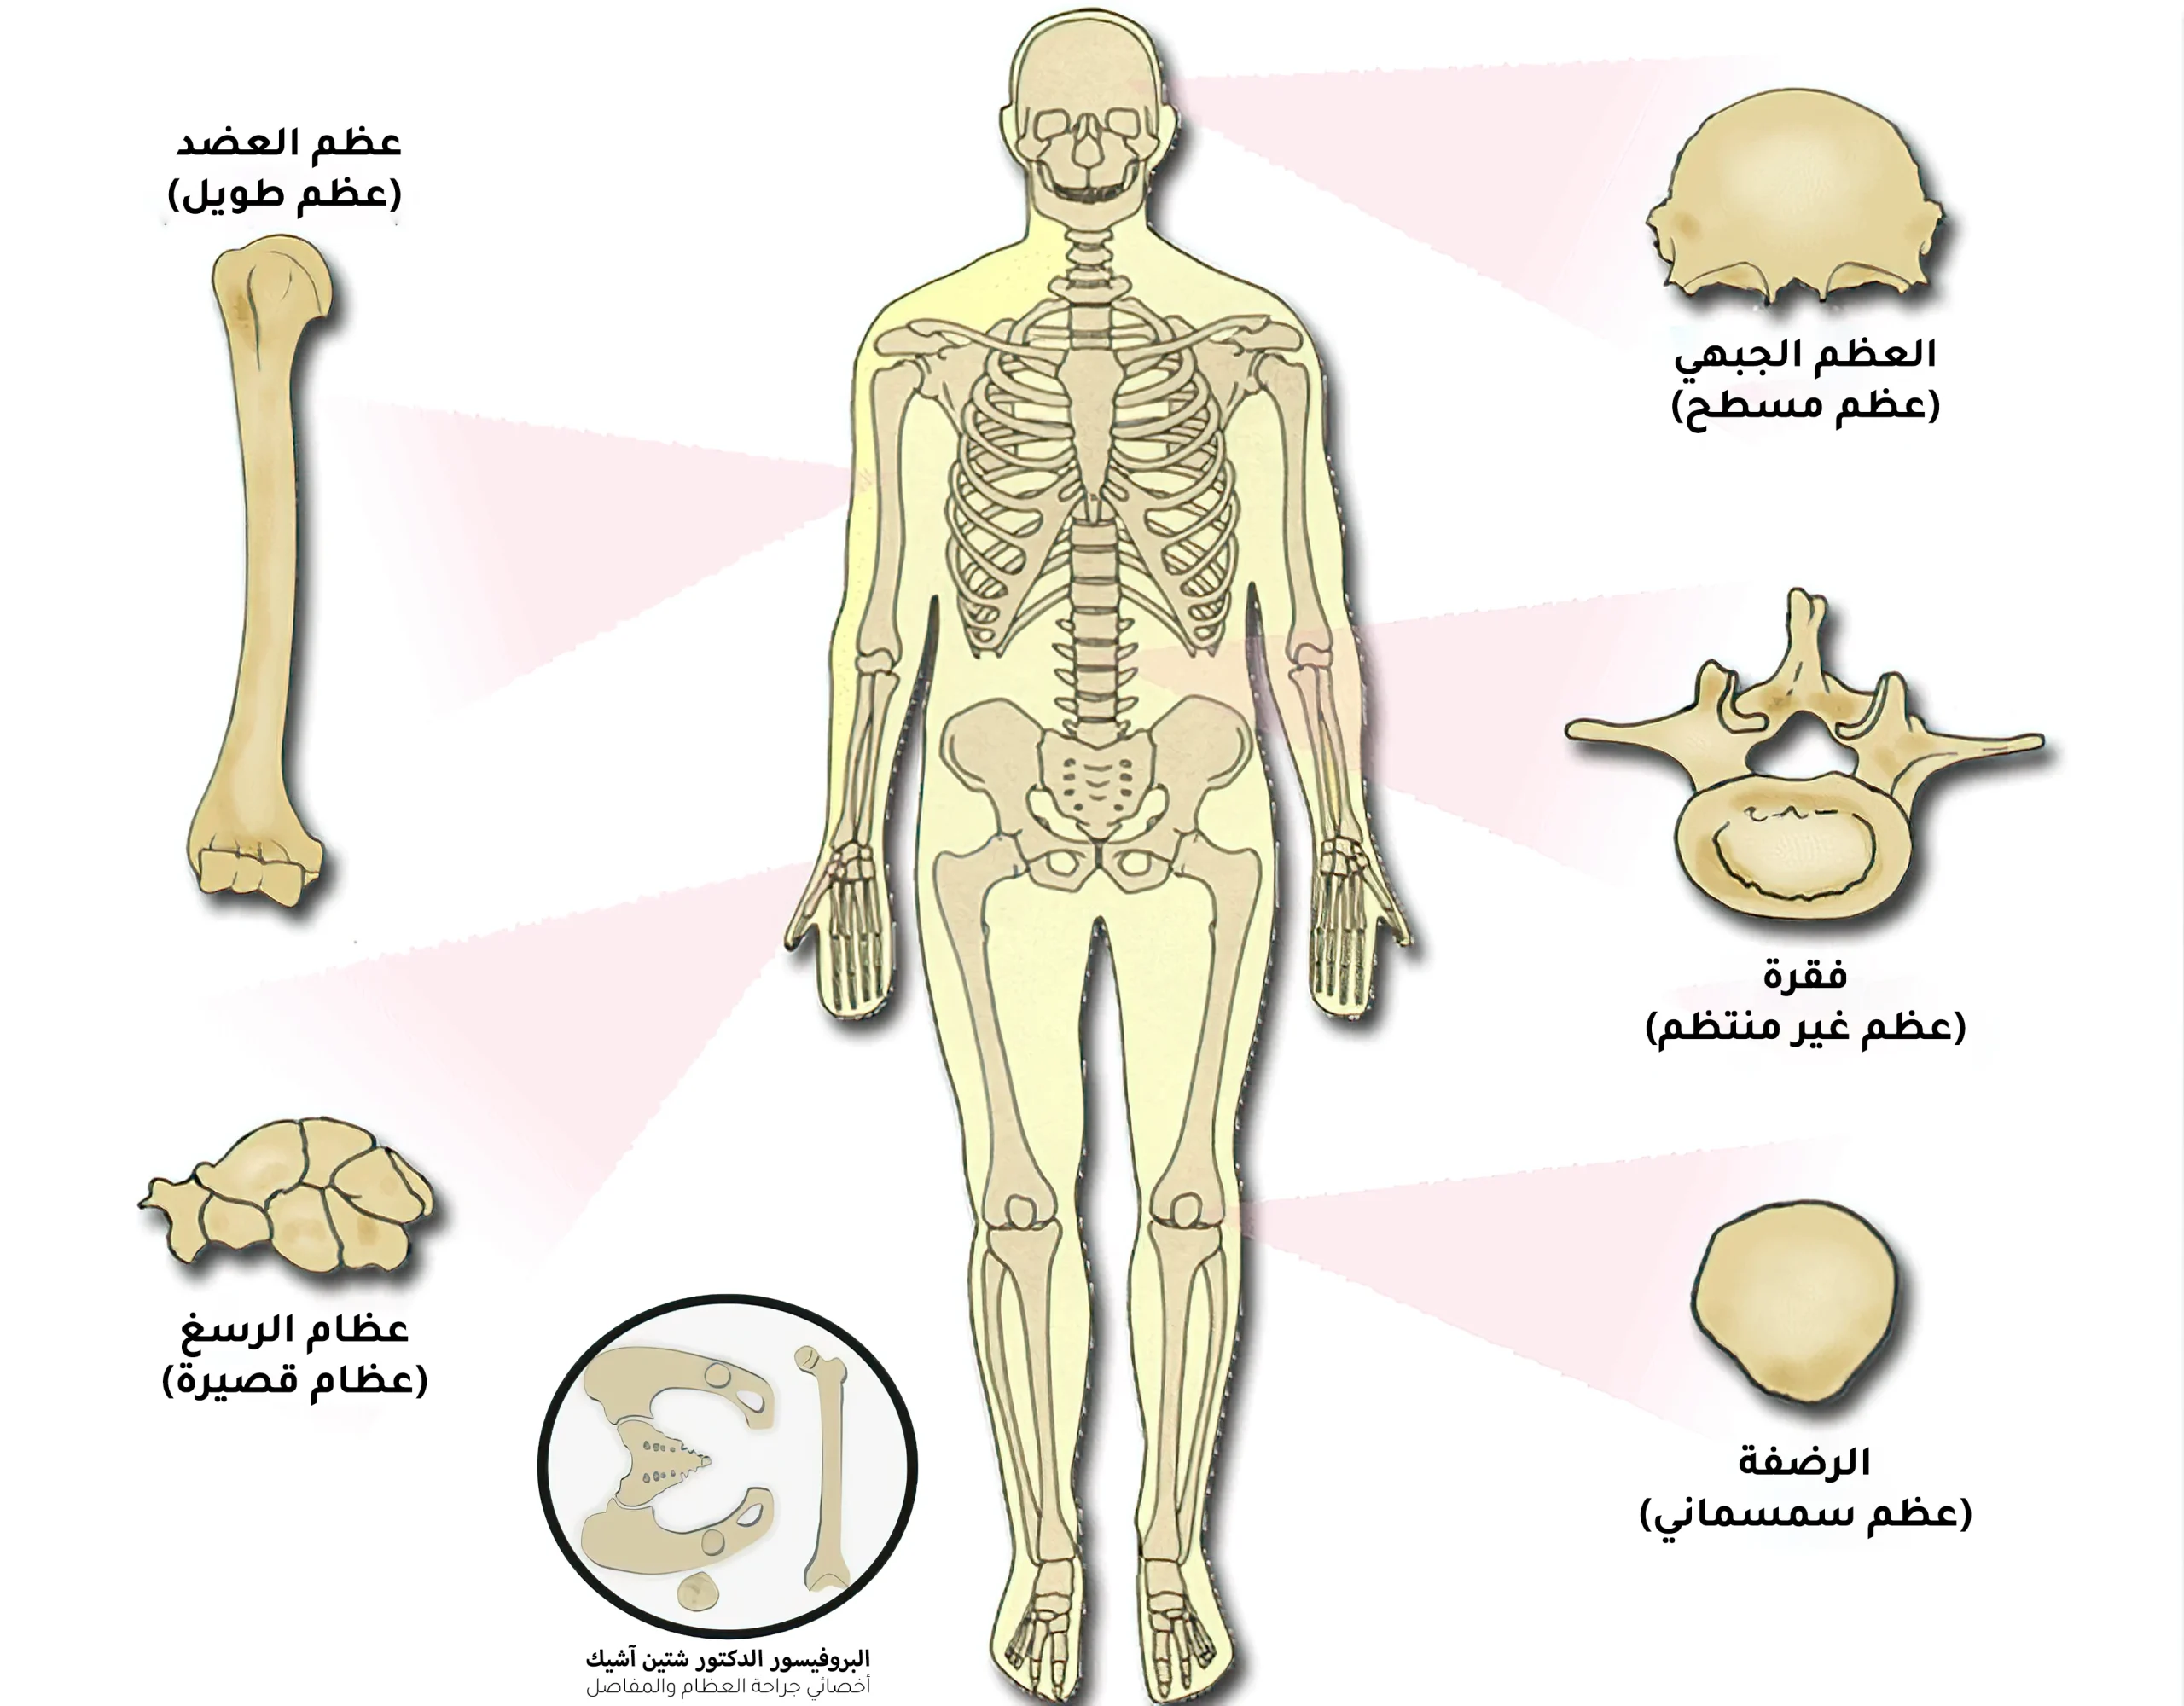 تقسم أنواع العظام حسب شكلها إلى عظام مسطحة كالعظم الجبهي وعظام طويلة كعظم العضد وعظام قصيرة كعظام الرسغ وعظام سمسمانية كعظم الرضفة وعظام غير منتظمة كعظام العمود الفقري